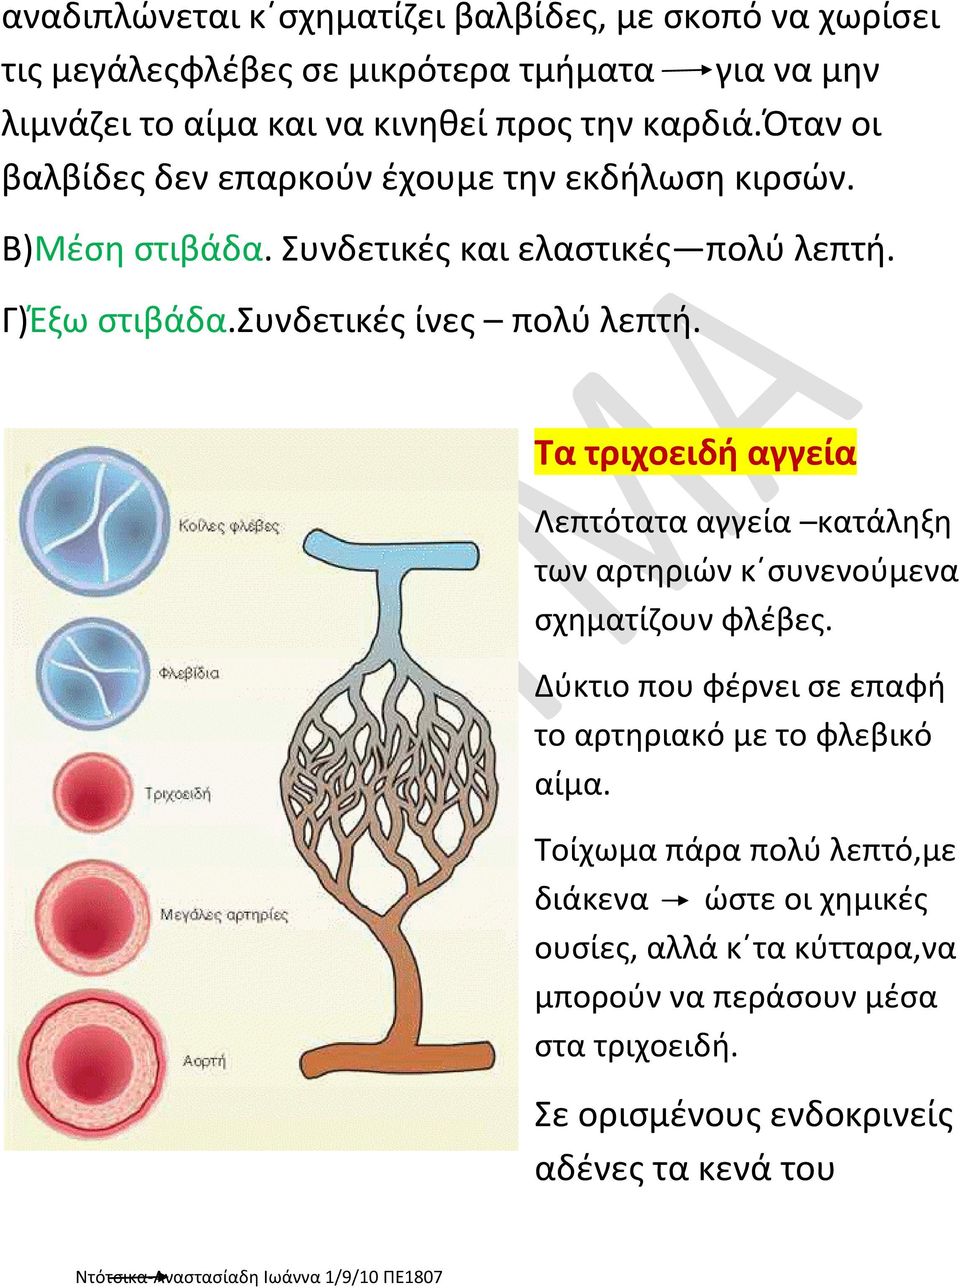 Τα τριχοειδή αγγεία Λεπτότατα αγγεία κατάληξη των αρτηριών κ συνενούμενα σχηματίζουν φλέβες. Δύκτιο που φέρνει σε επαφή το αρτηριακό με το φλεβικό αίμα.